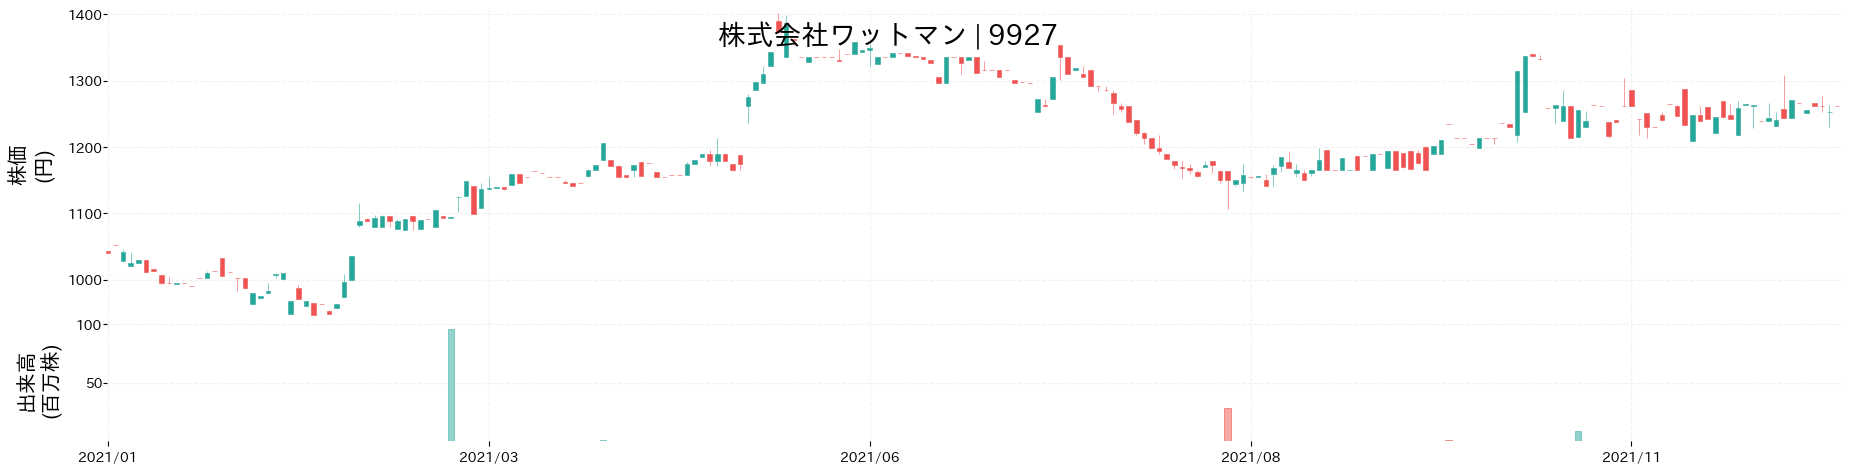 ワットマンの株価推移(2021)